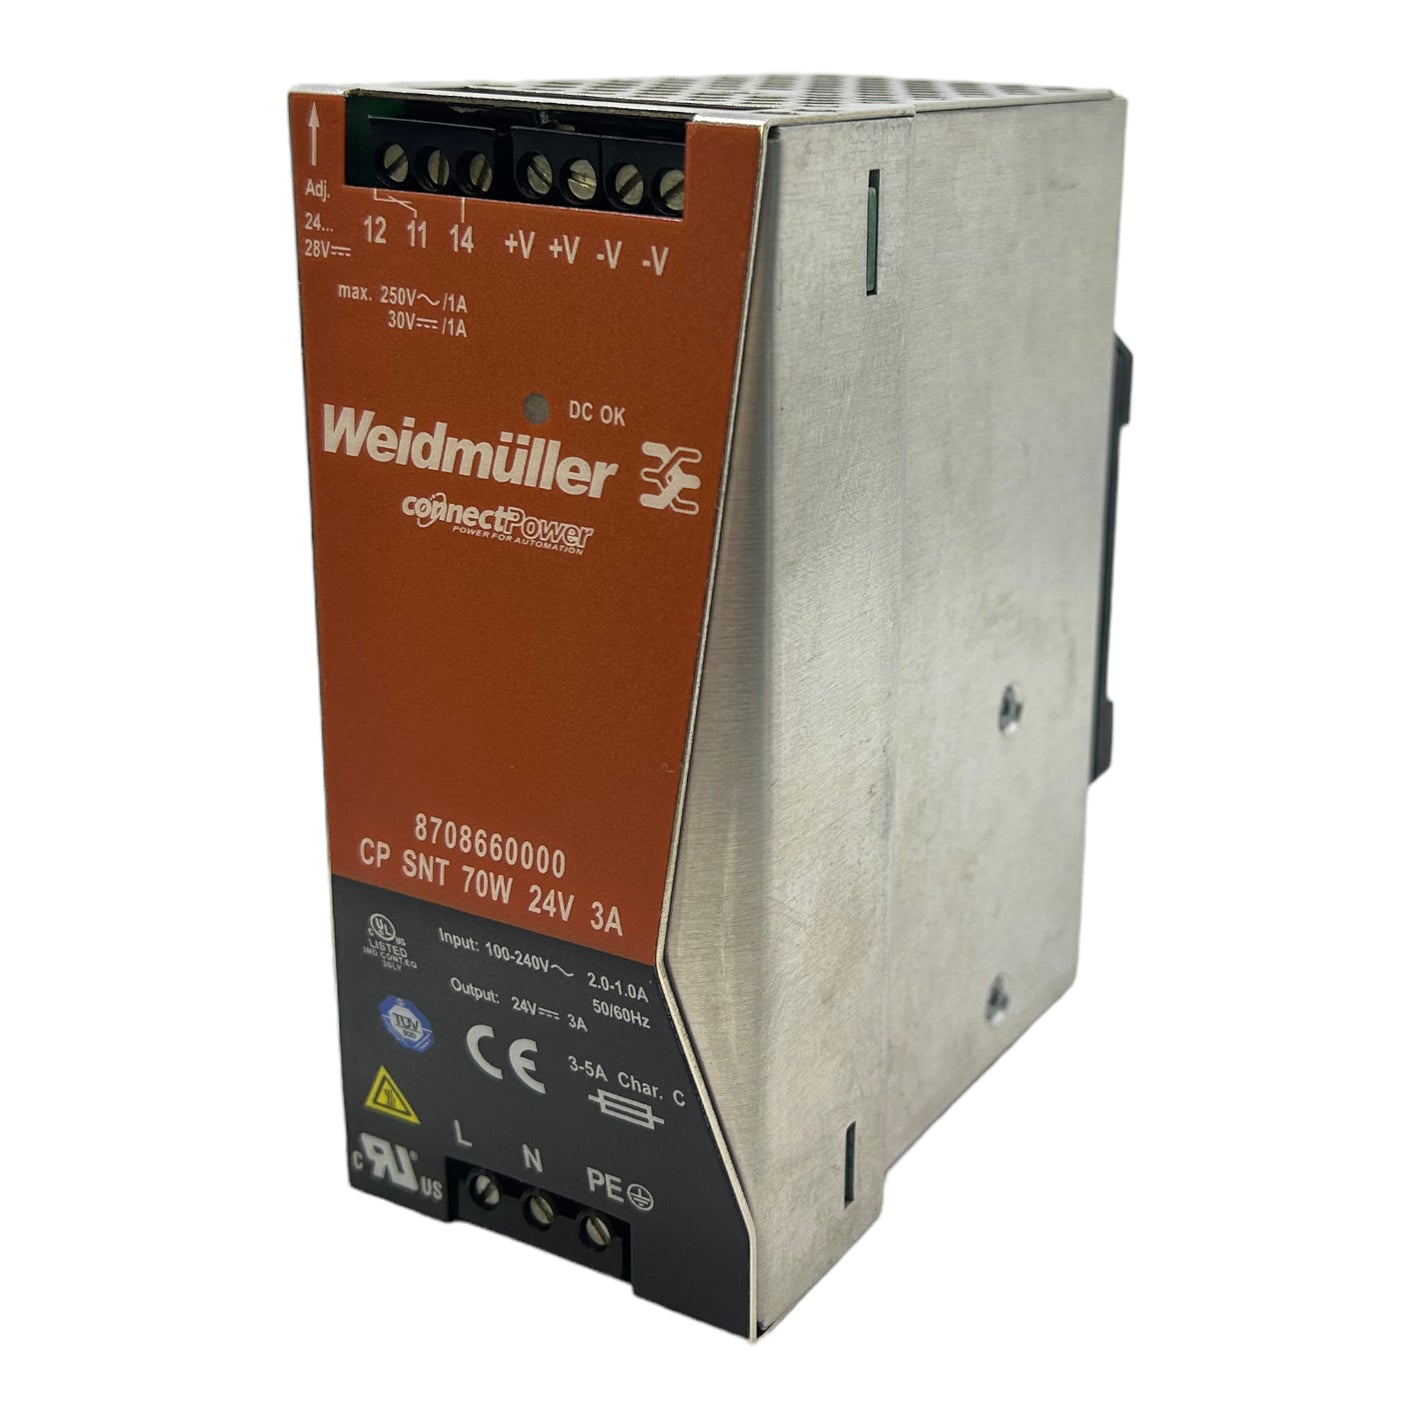 Weidmüller 8708660000 power supply 24V 70W 3A 2.0-1.0A 100-240V 